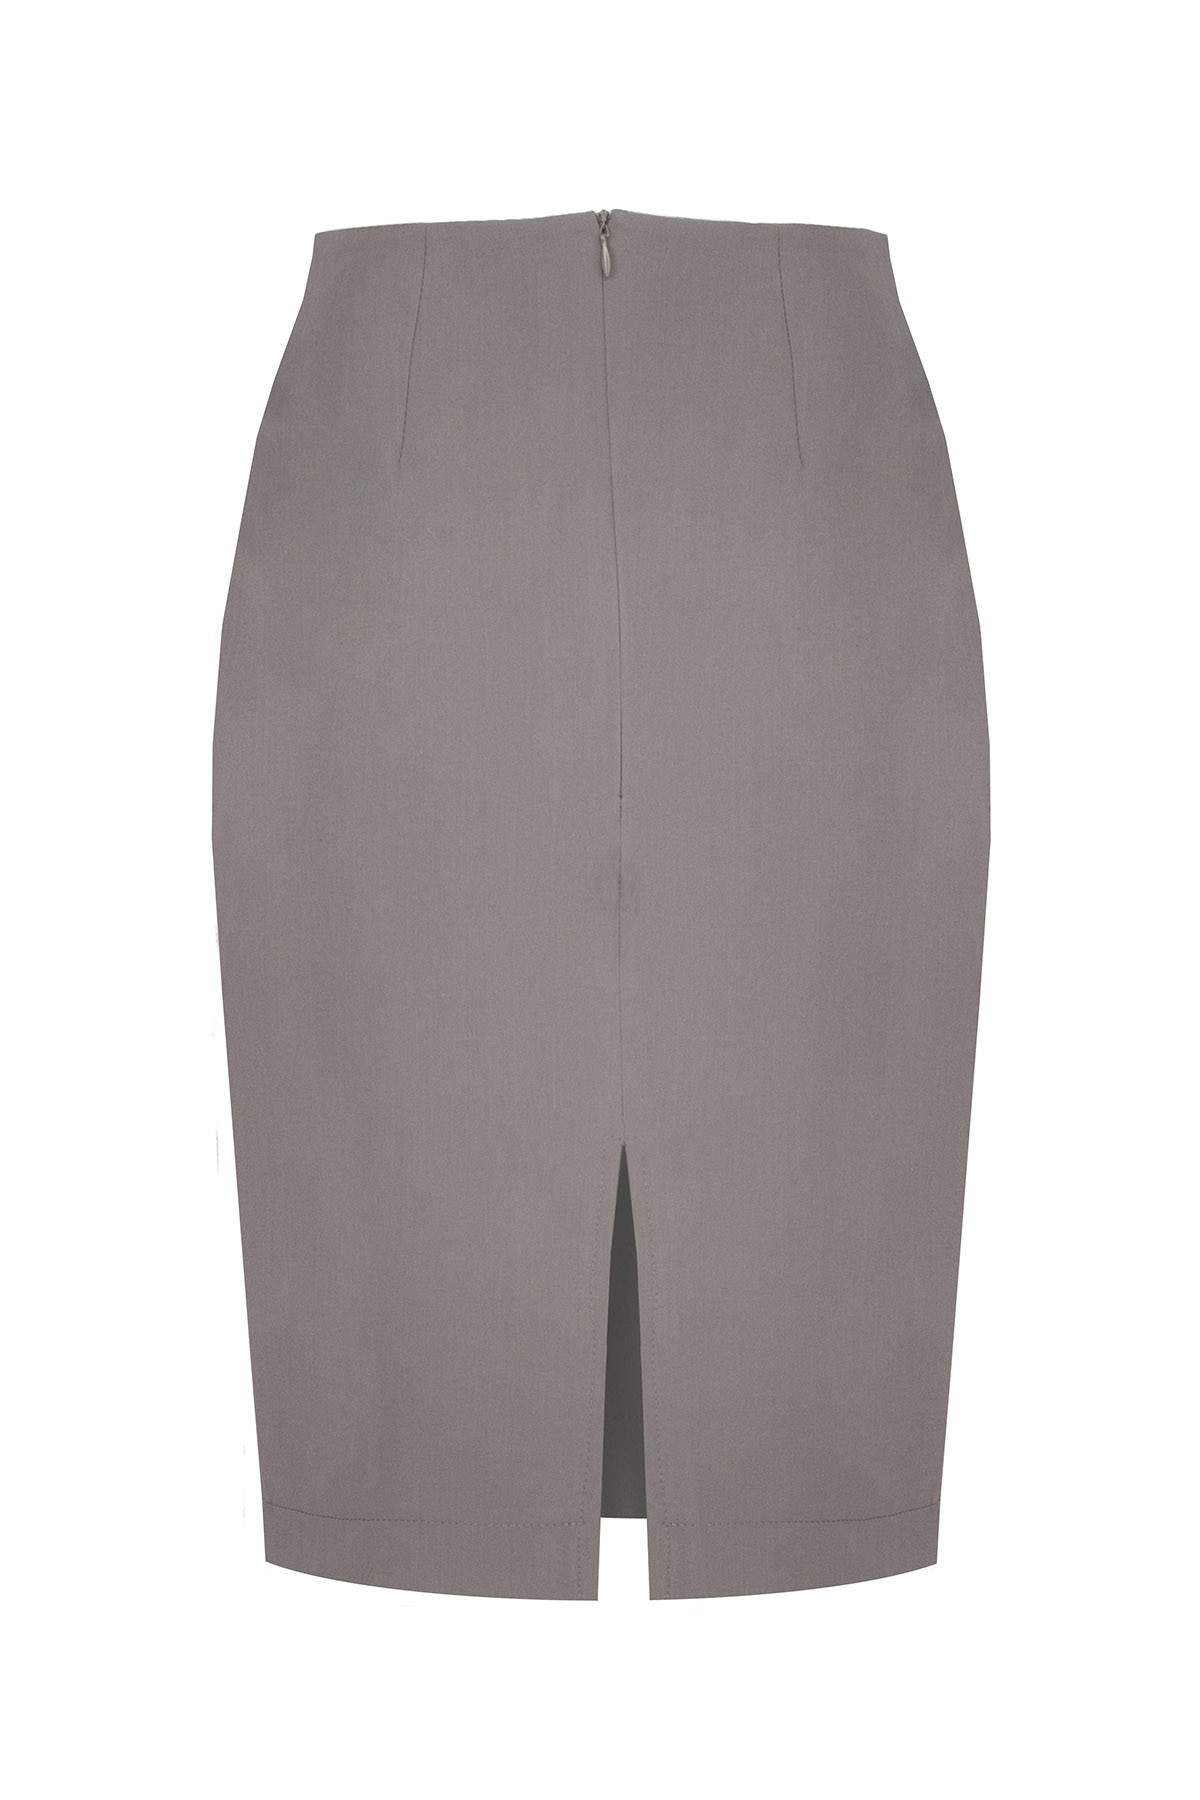 Dámská sukně model 17976151 S šedá XL - Figl